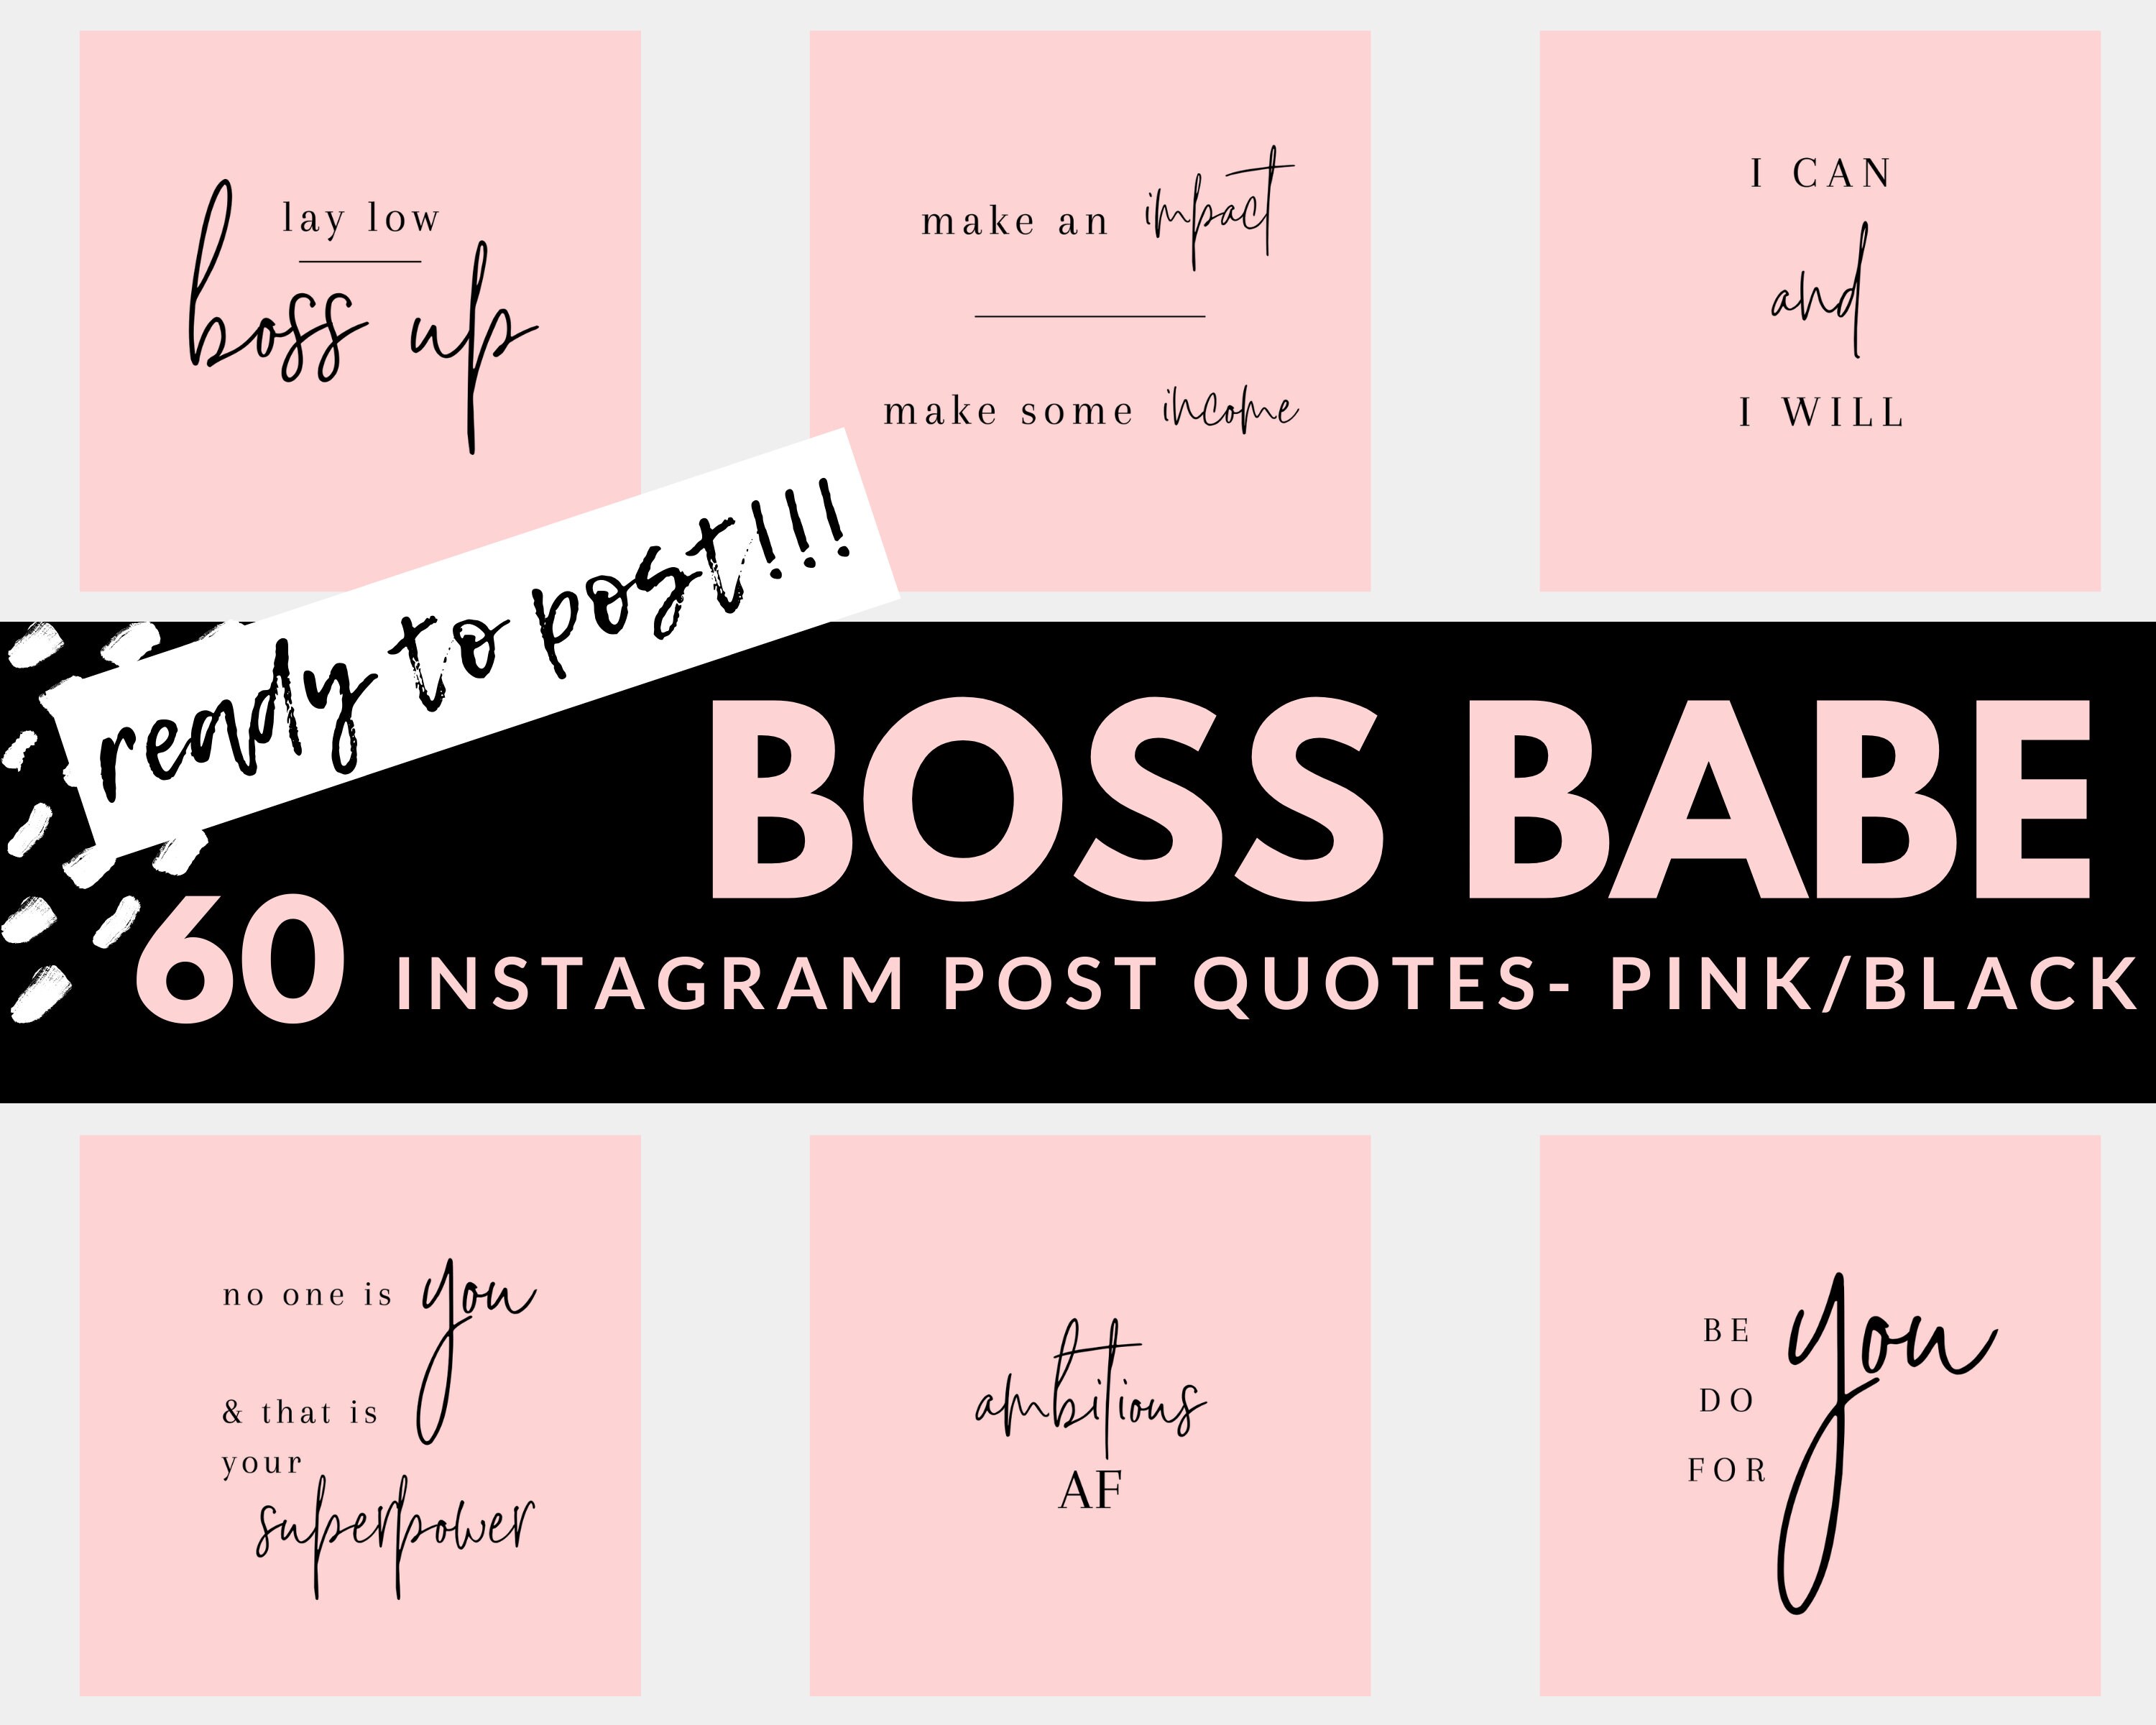 Boss Babe Instagram Posts mang lại cho bạn sự tự tin tuyệt đối, khiến những ai xem cảm thấy trầm trồ và kính nể. Bạn sẽ trở nên nổi bật hơn trong mạng xã hội này với những bài đăng đầy tinh thần lãnh đạo mà sản phẩm này mang lại.